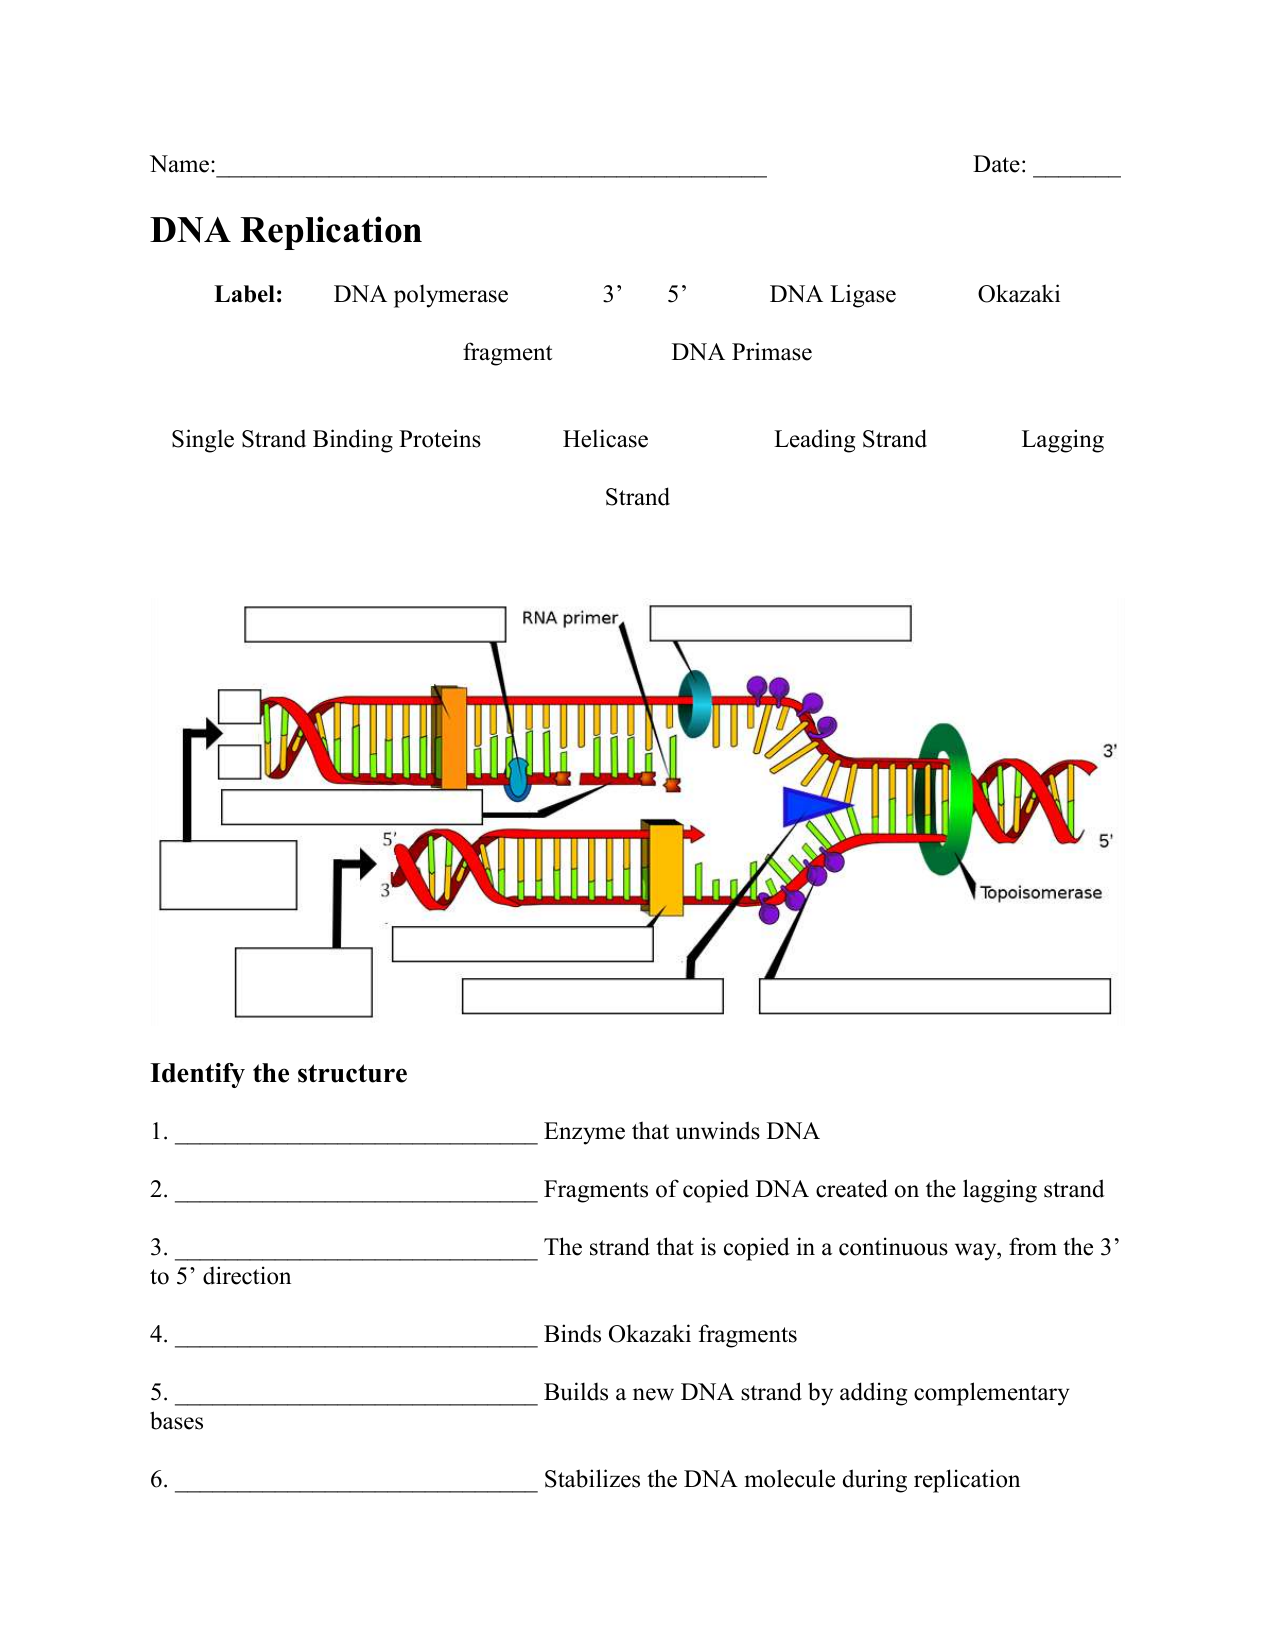 dna-replication-practice-worksheet